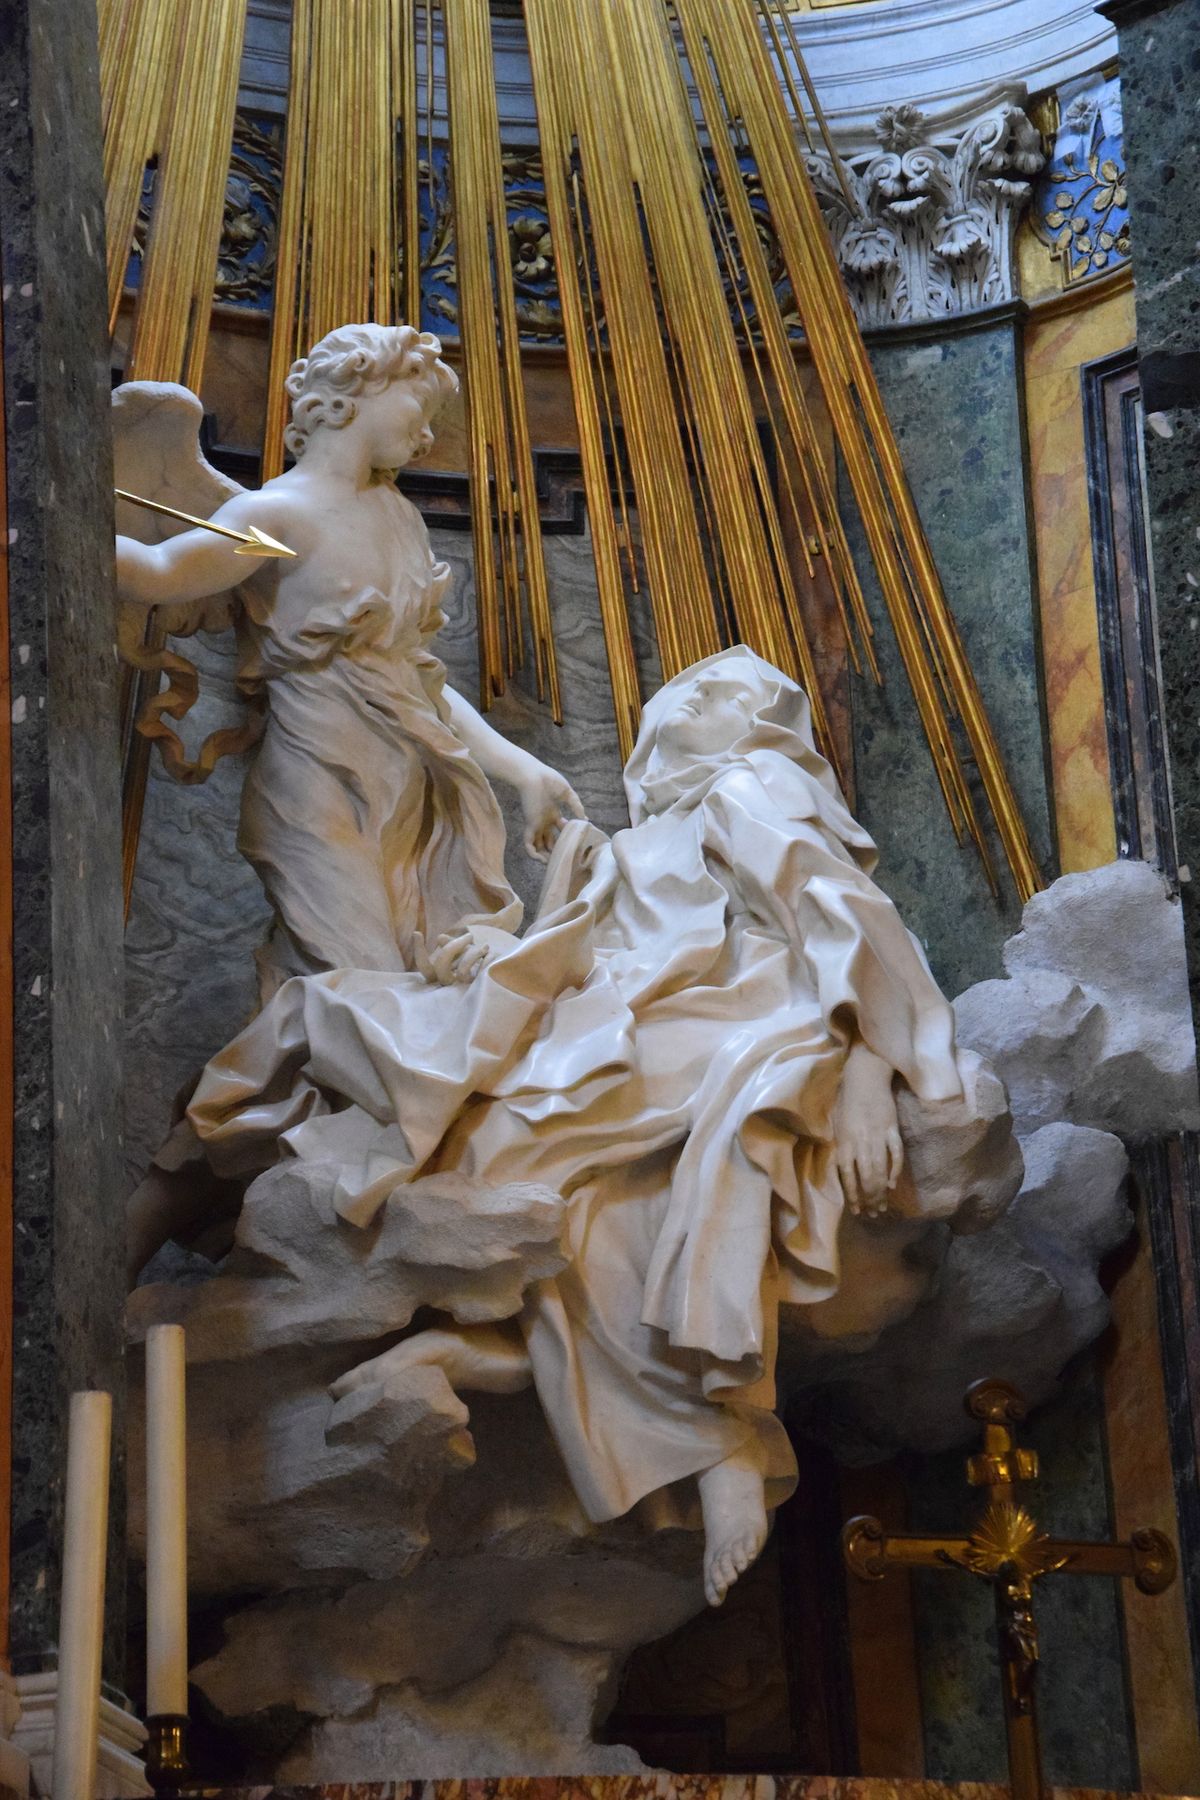 Těžko uvěřit, že roucho sv. Terezy je opravdu vytesáno z kamene. Dílo patří k vrcholným kusům římského baroka.